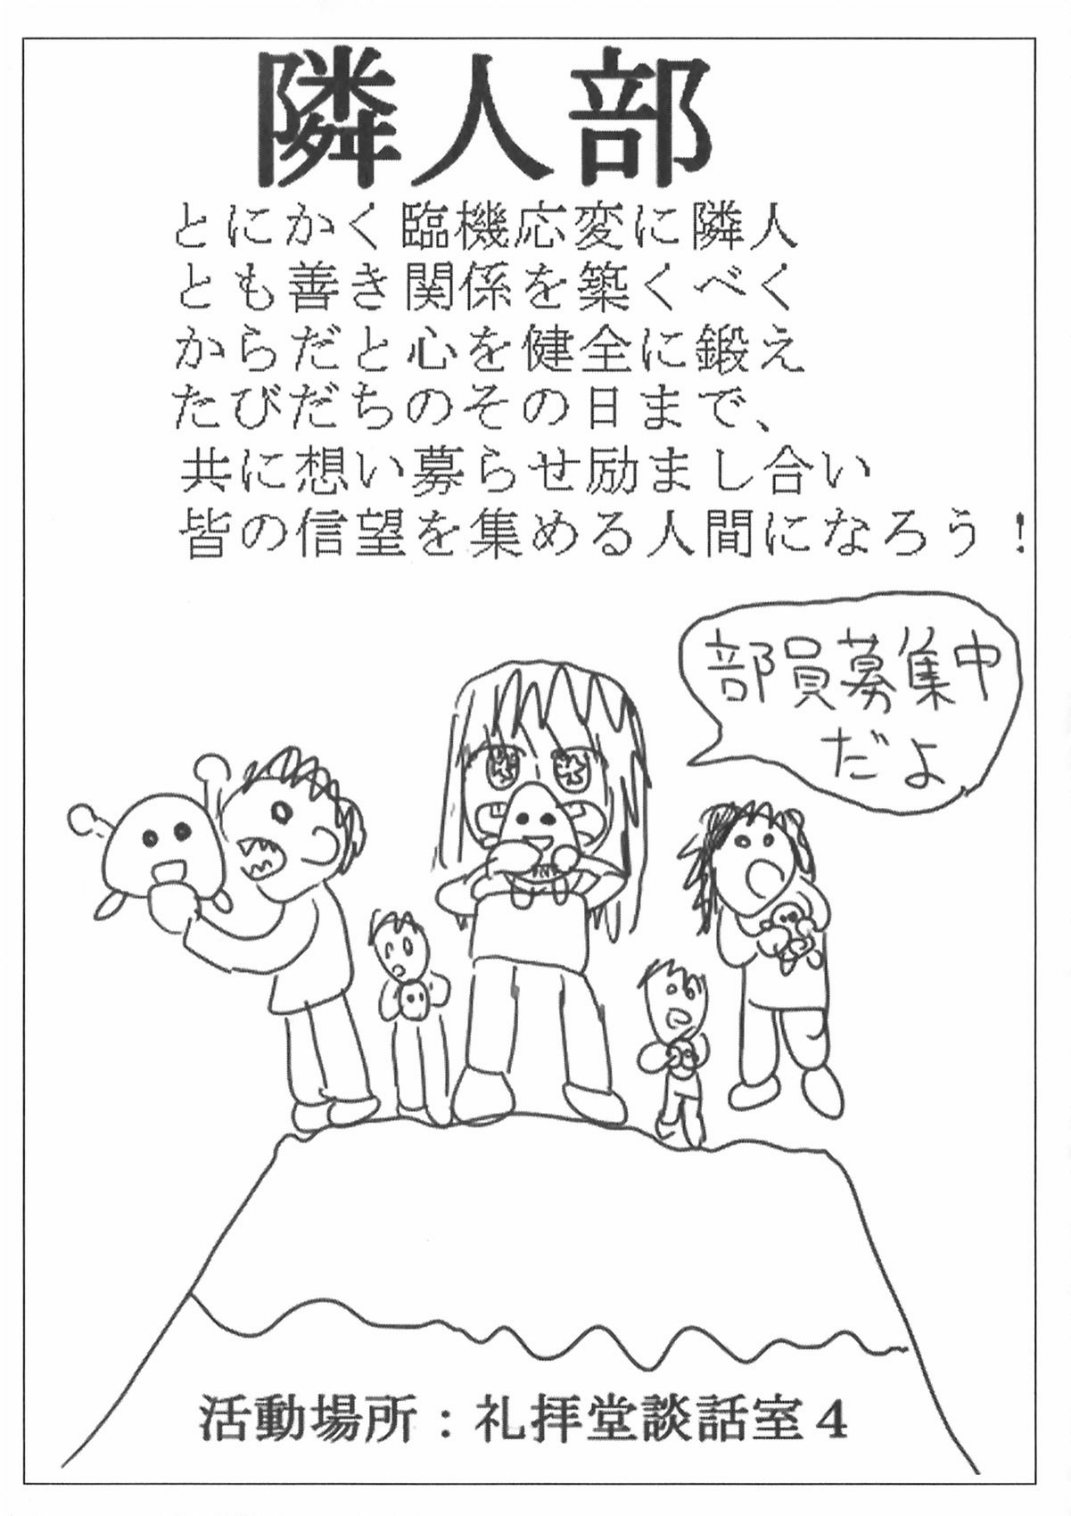 [Ruidrive] - Ilustrasi Light Novel Boku wa Tomodachi ga Sukunai - Volume 01 - 09